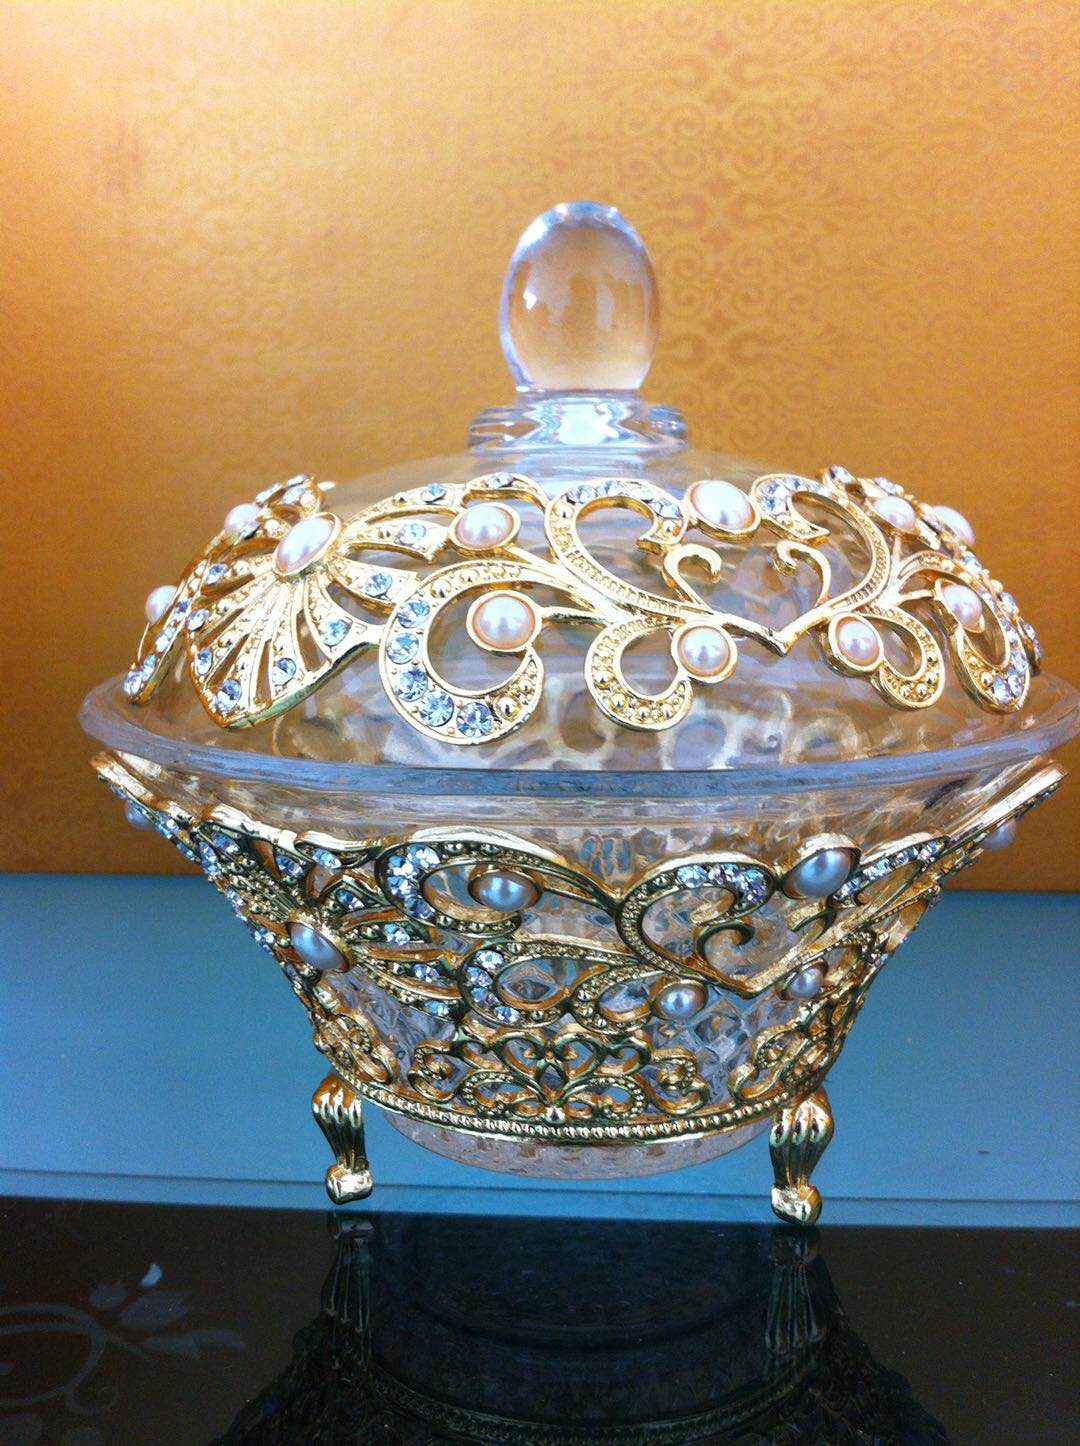 Glass sugar bowl with ZAMAC decoration